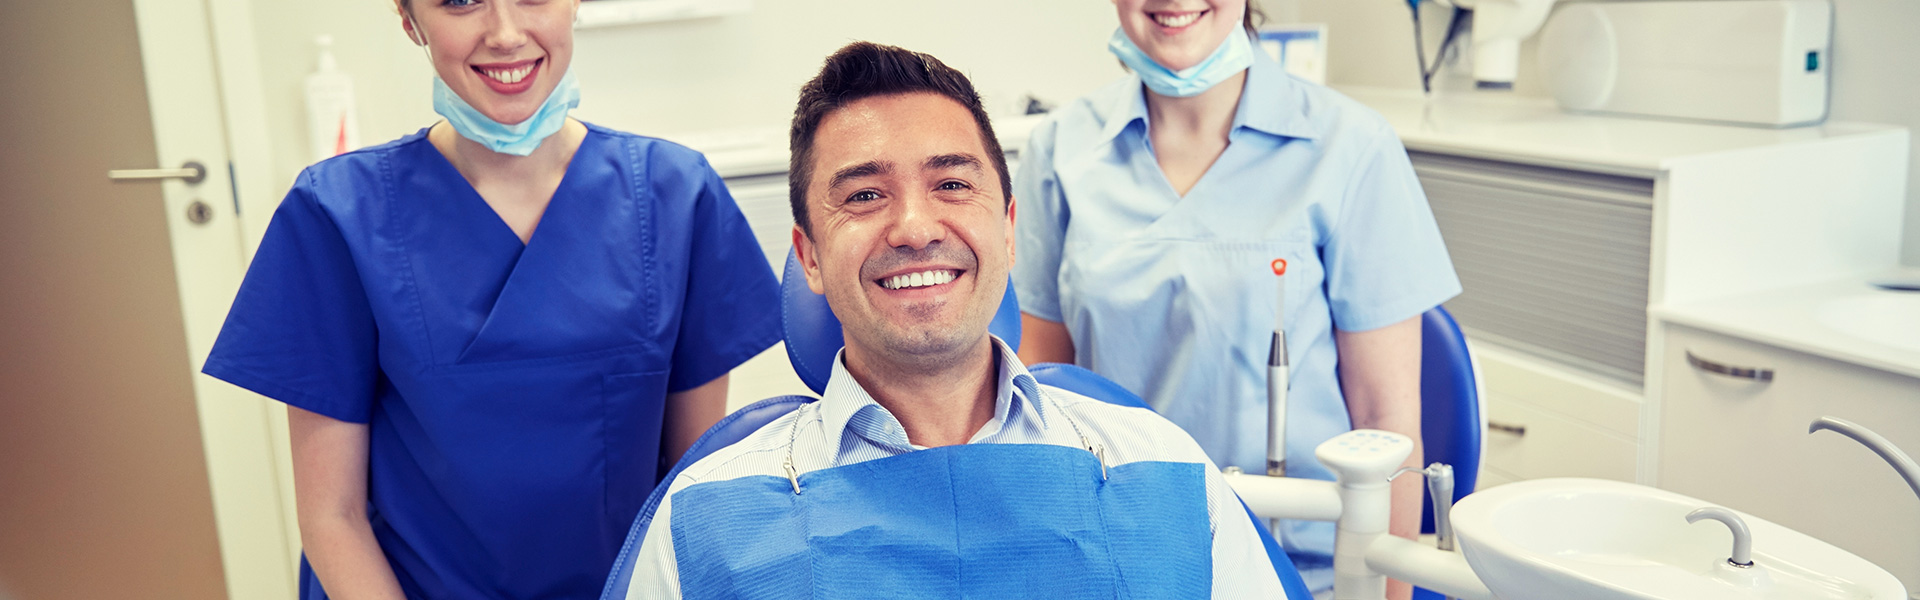 Best Dental Implants Provider Rochester hills Banner